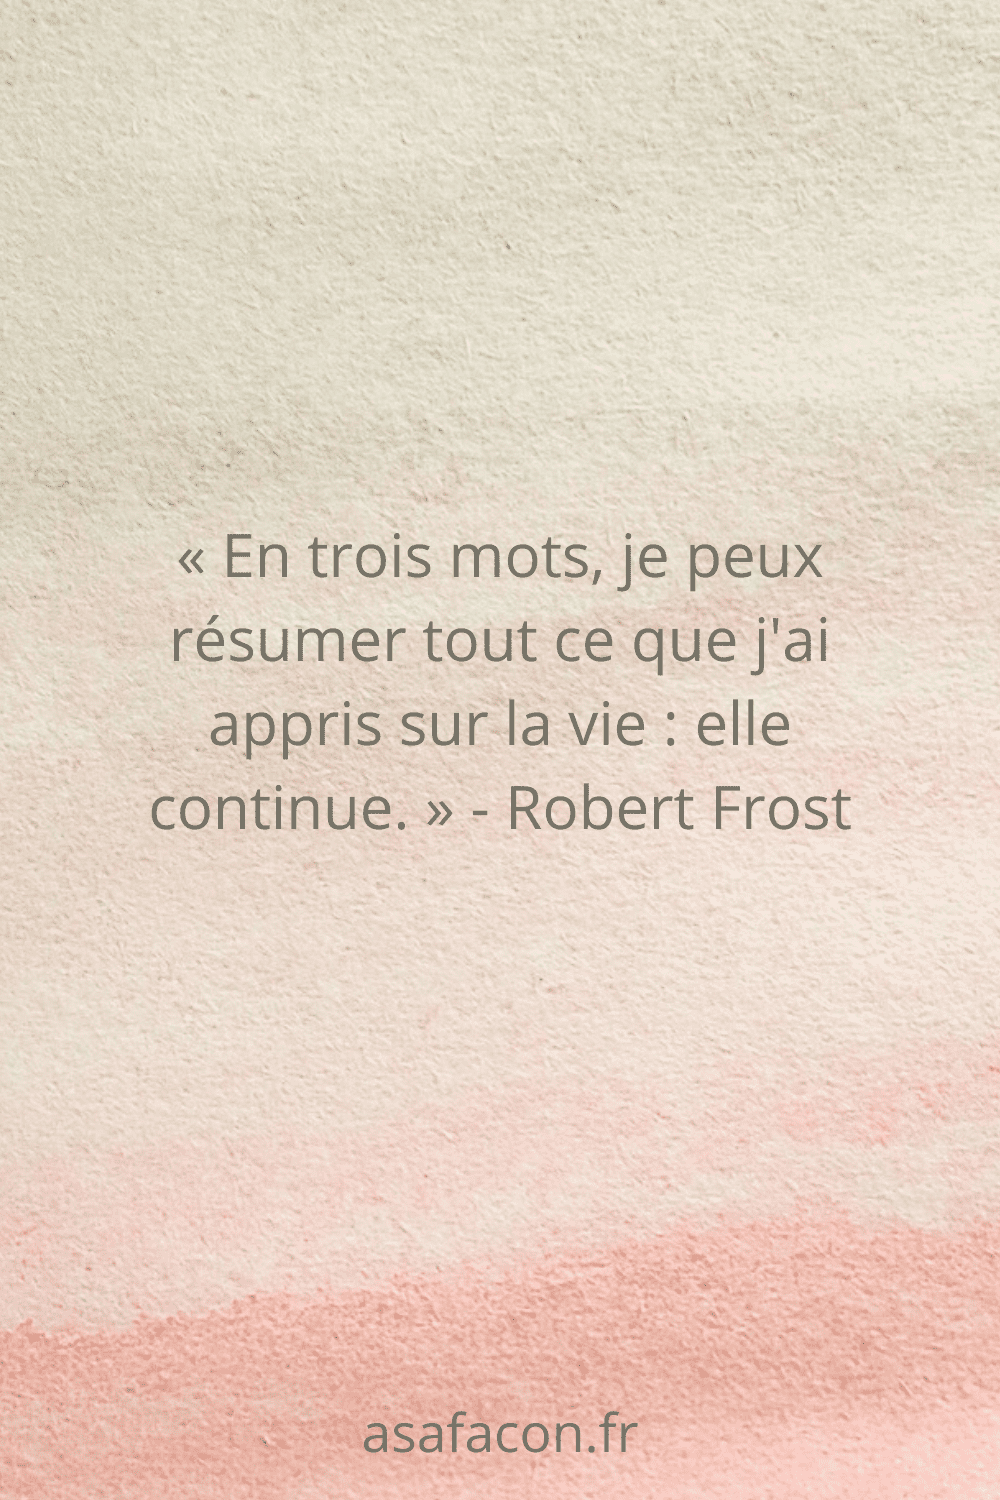 « En trois mots, je peux résumer tout ce que j'ai appris sur la vie elle continue. » - Robert Frost